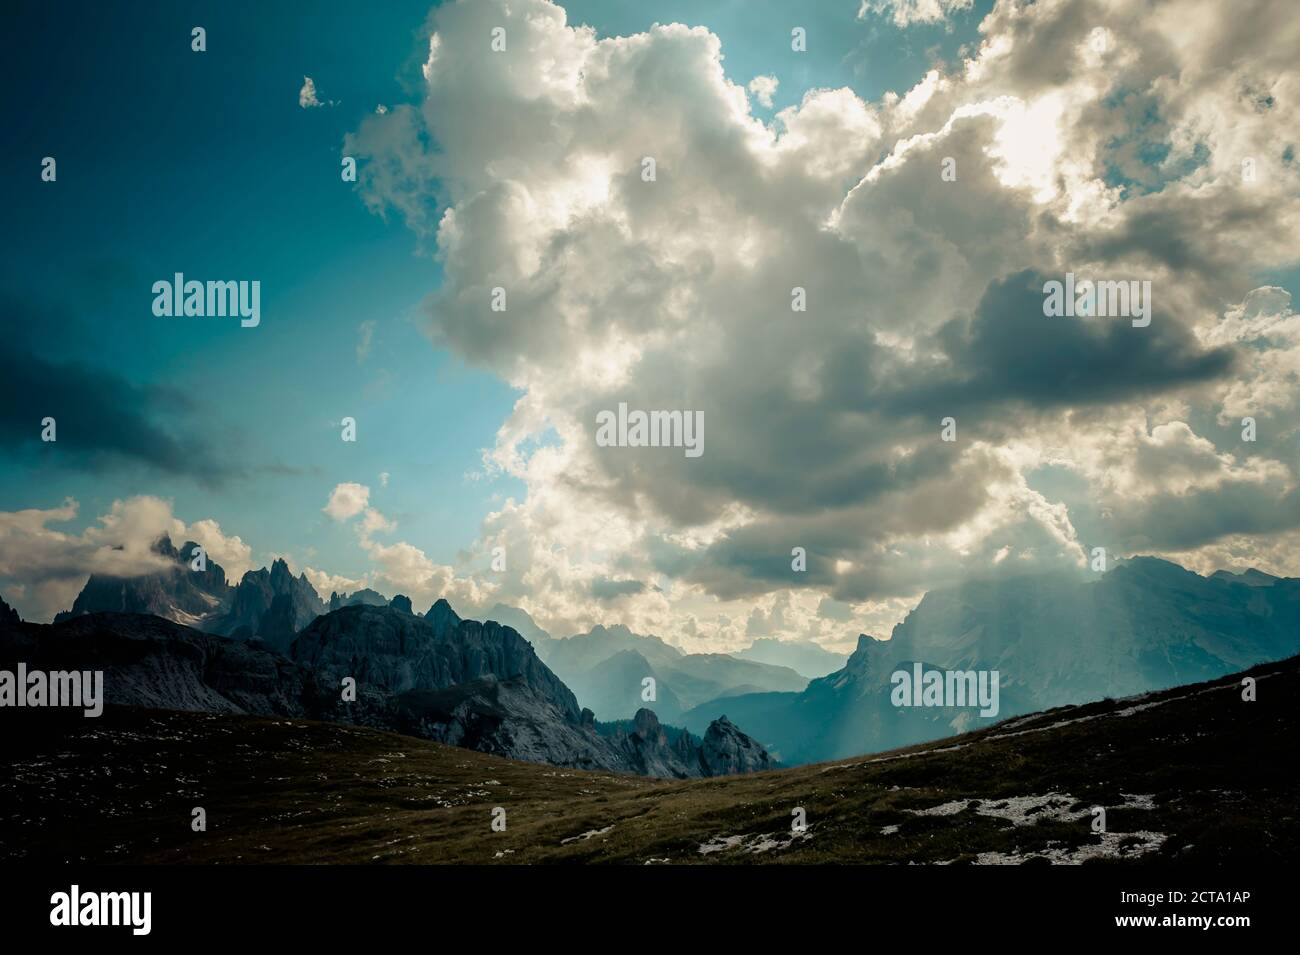 Italy, Province of Belluno, Veneto, Auronzo di Cadore, Tre Cime di Lavaredo, cloudscapes Stock Photo